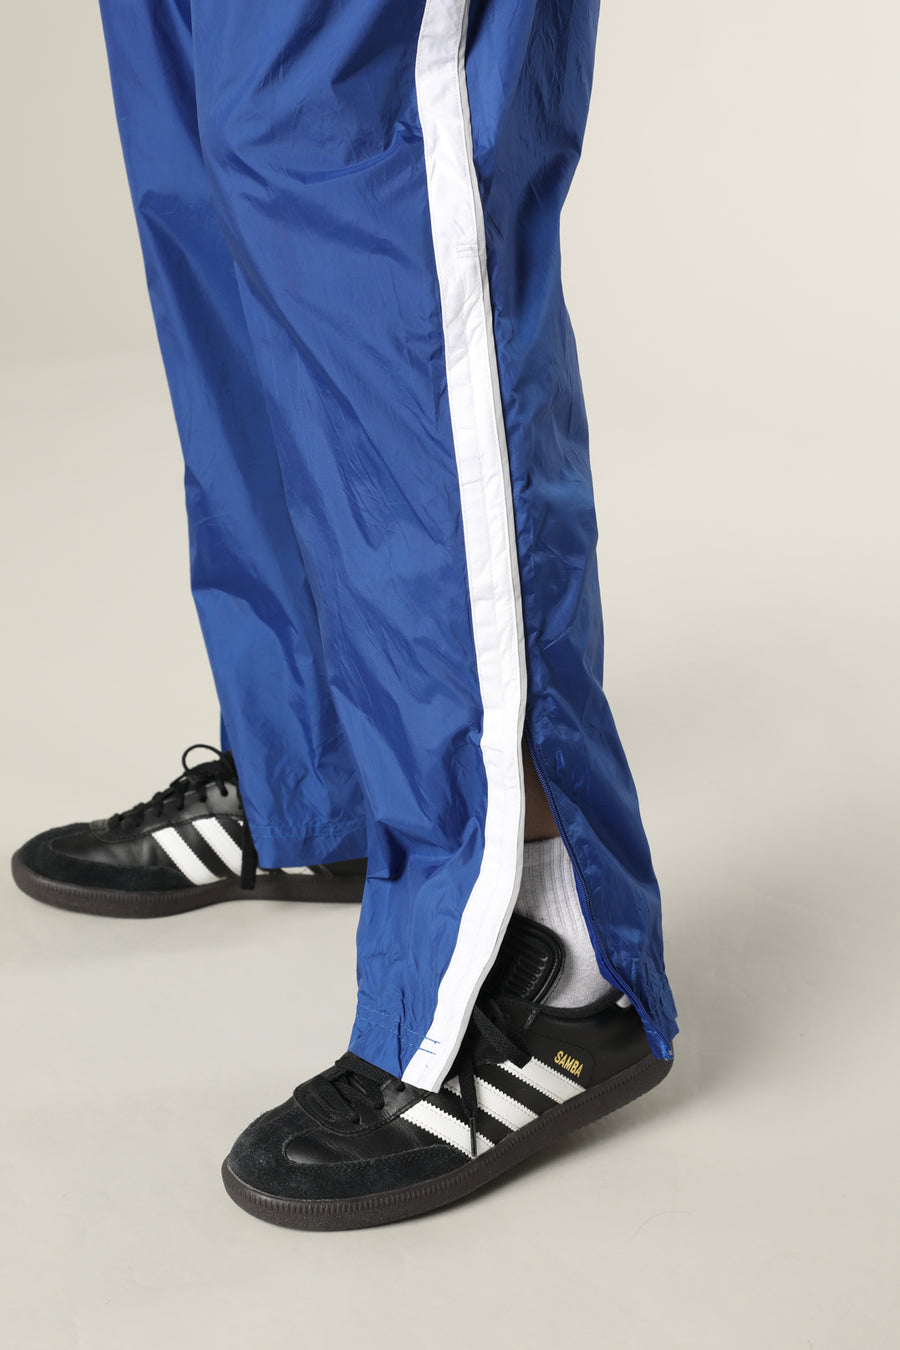 Adidas Tracksuit Bottoms Track Pants Vintage Joggers Sweatpants Y2K 00s L  36 